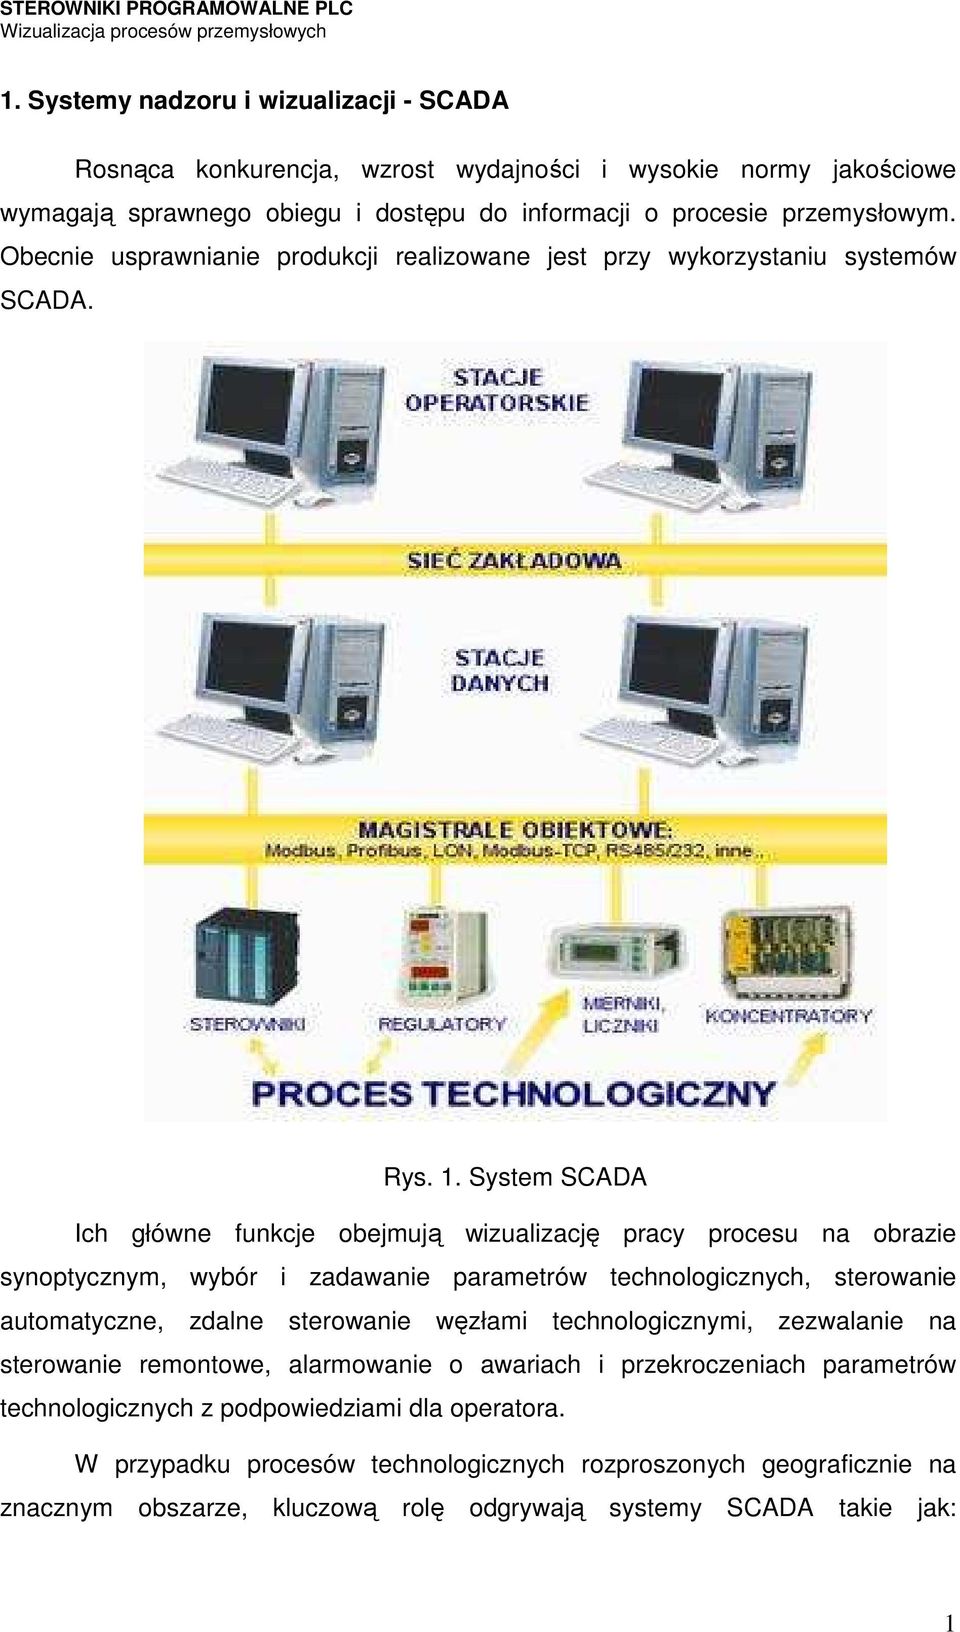 System SCADA Ich główne funkcje obejmują wizualizację pracy procesu na obrazie synoptycznym, wybór i zadawanie parametrów technologicznych, sterowanie automatyczne, zdalne sterowanie